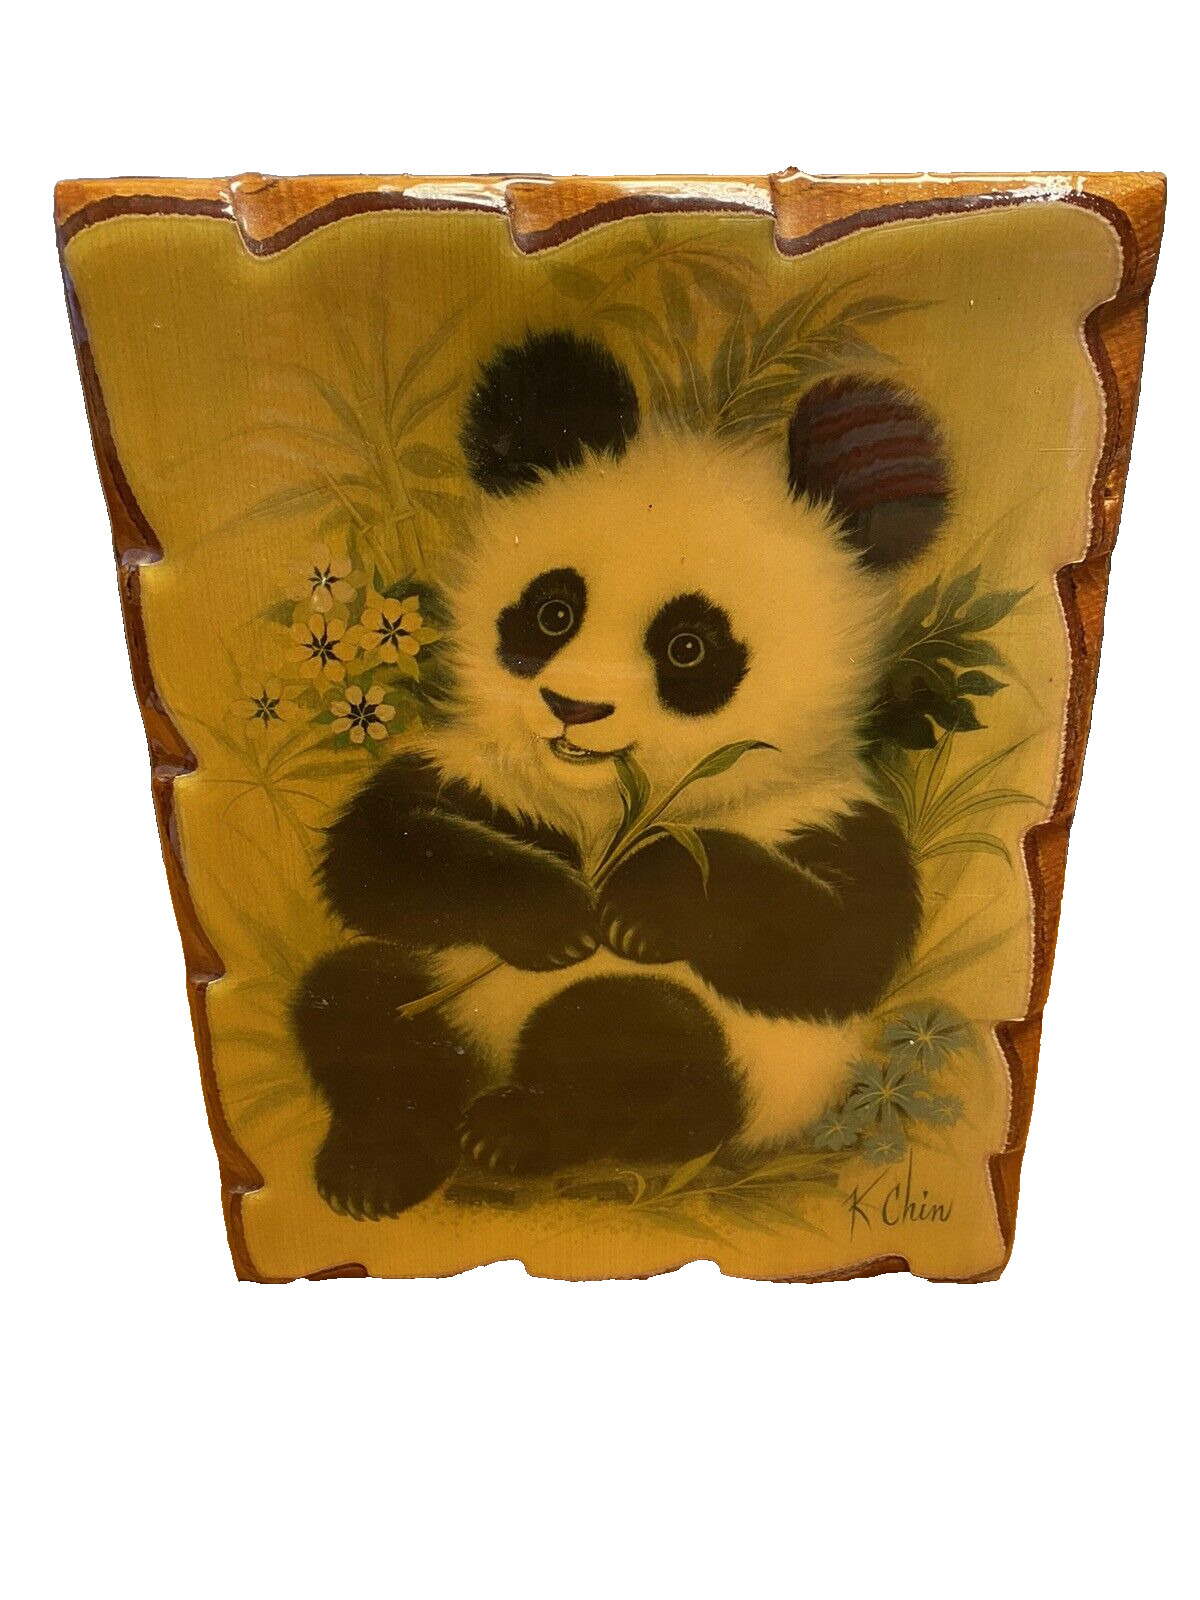 Vintage K. Chin Wood and Resin Panda Wall Art